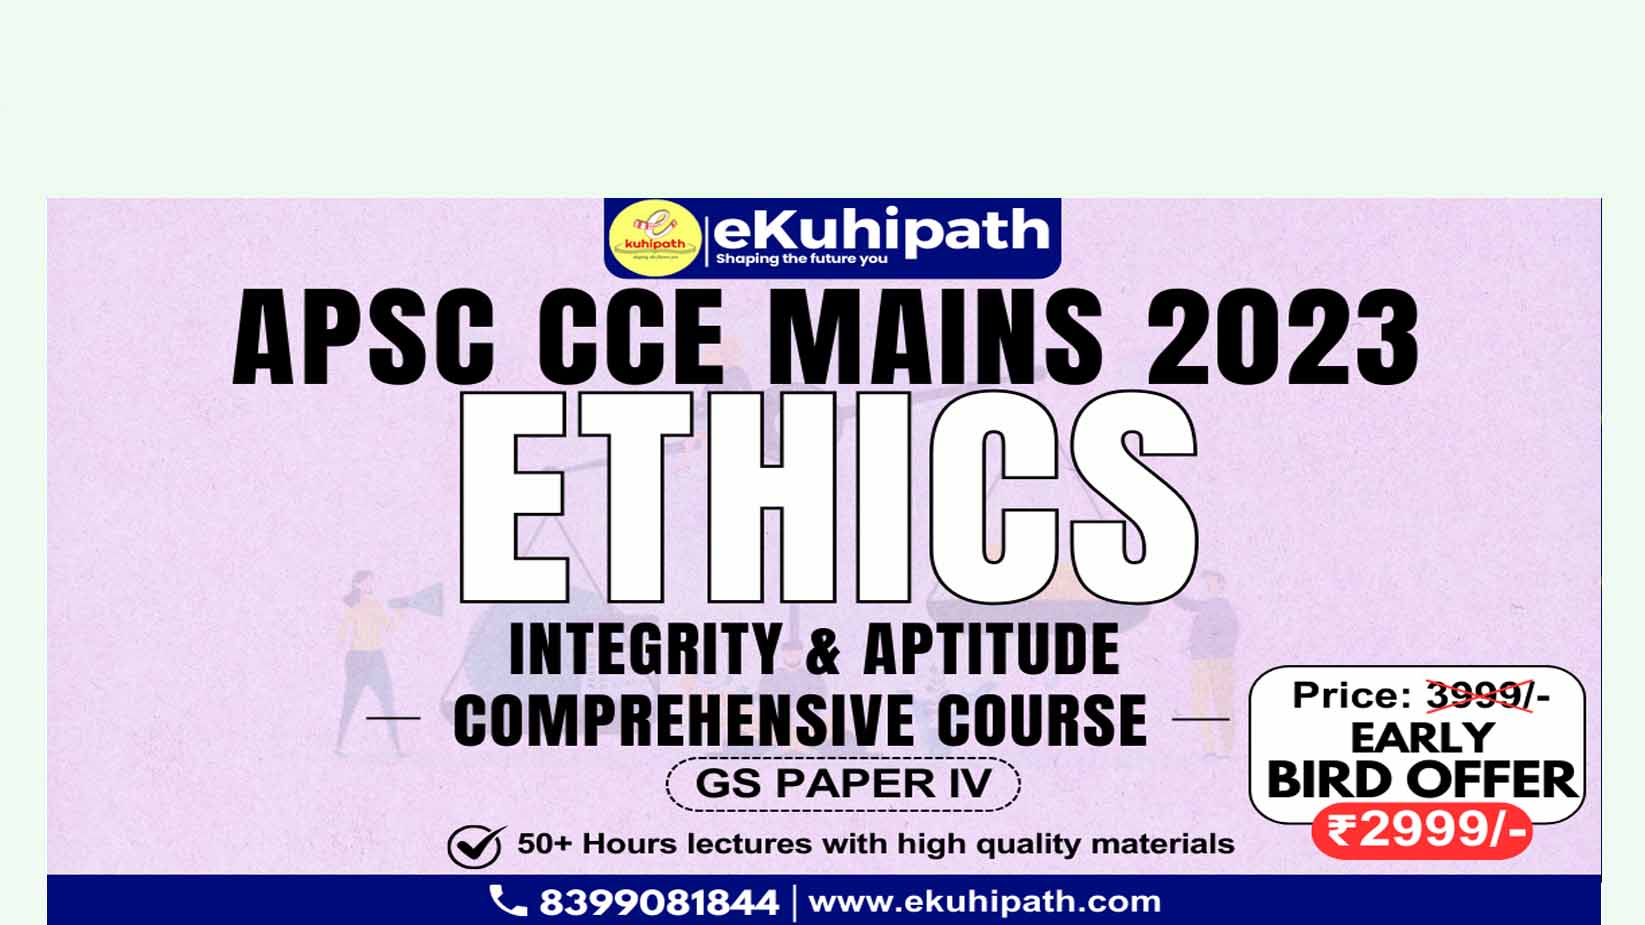 APSC CCE ETHICS